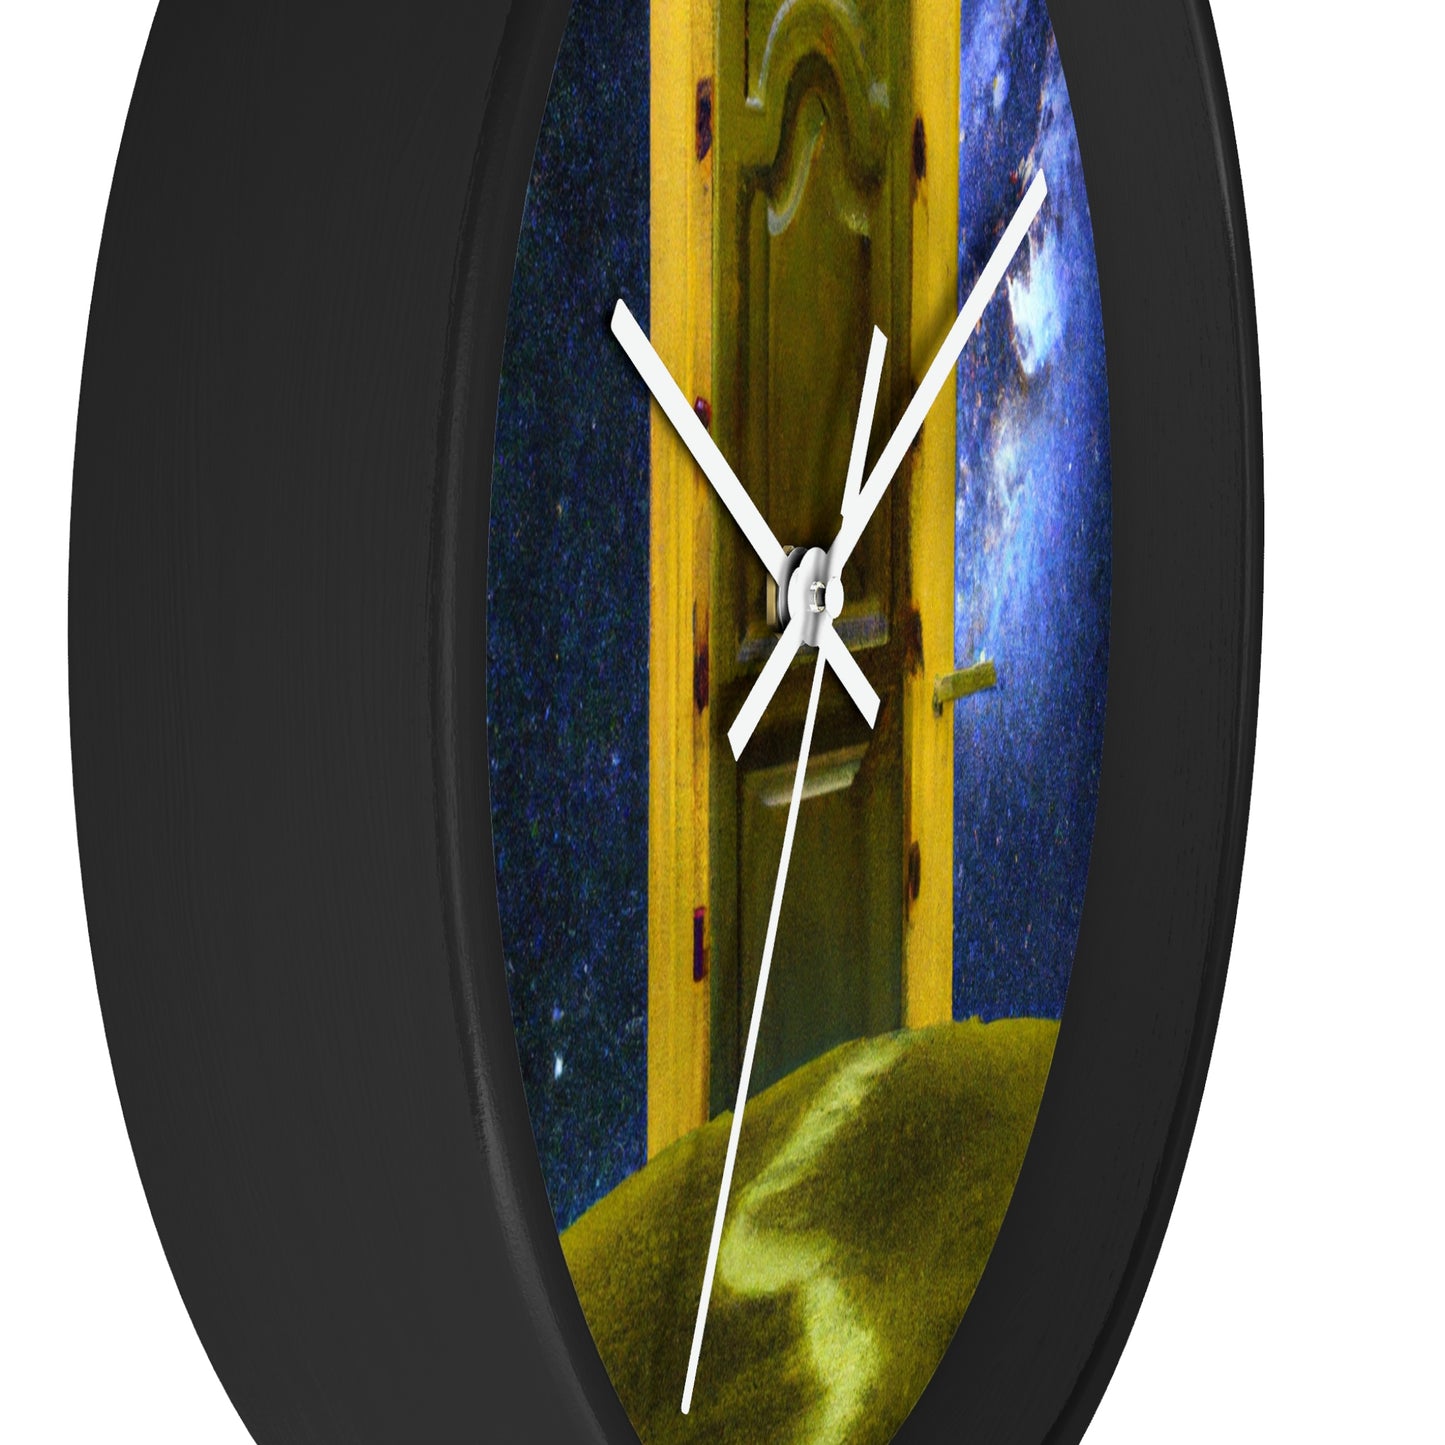 El umbral celestial - El reloj de pared alienígena